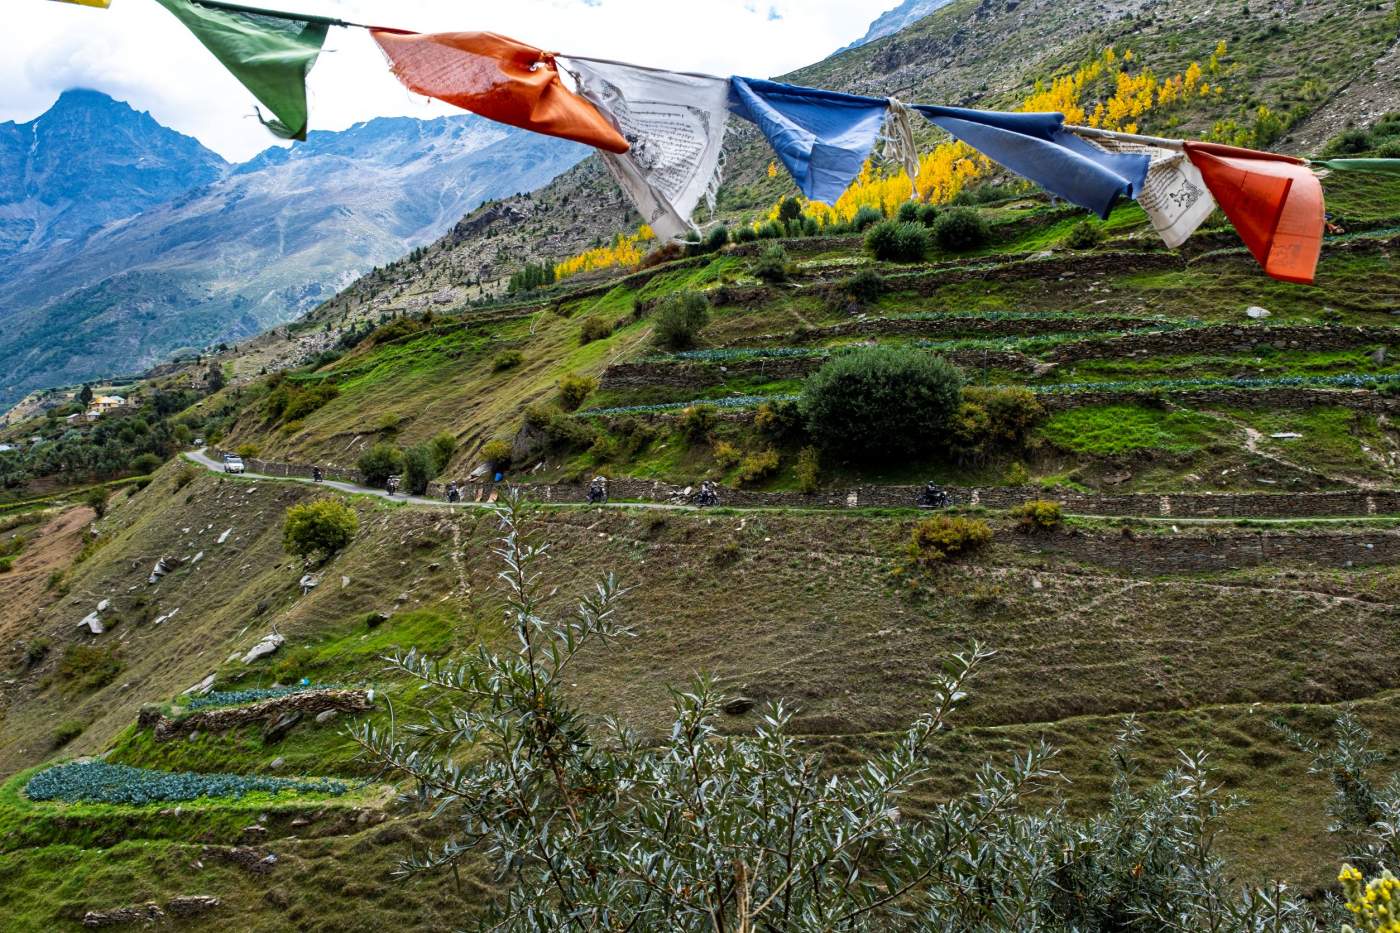 Gebetsflaggen flattern im Wind und wir fahren auf schönen Bergstraßen durch Nordindiens atemberaubende Landschaft.